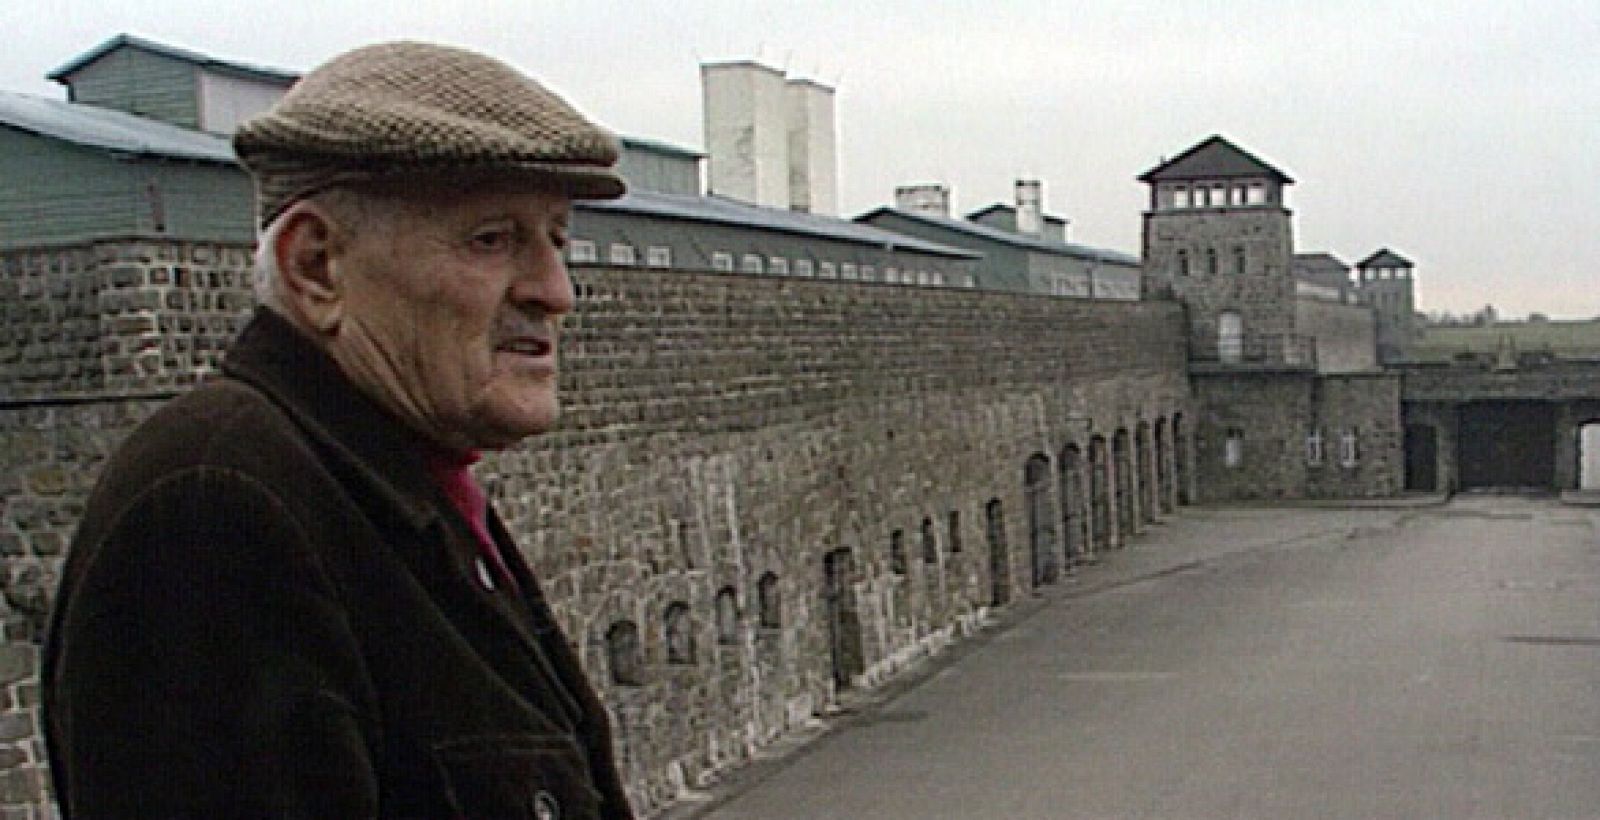 El ex deportado Francisco Comellas en el campo de concentración de Mauthausen.